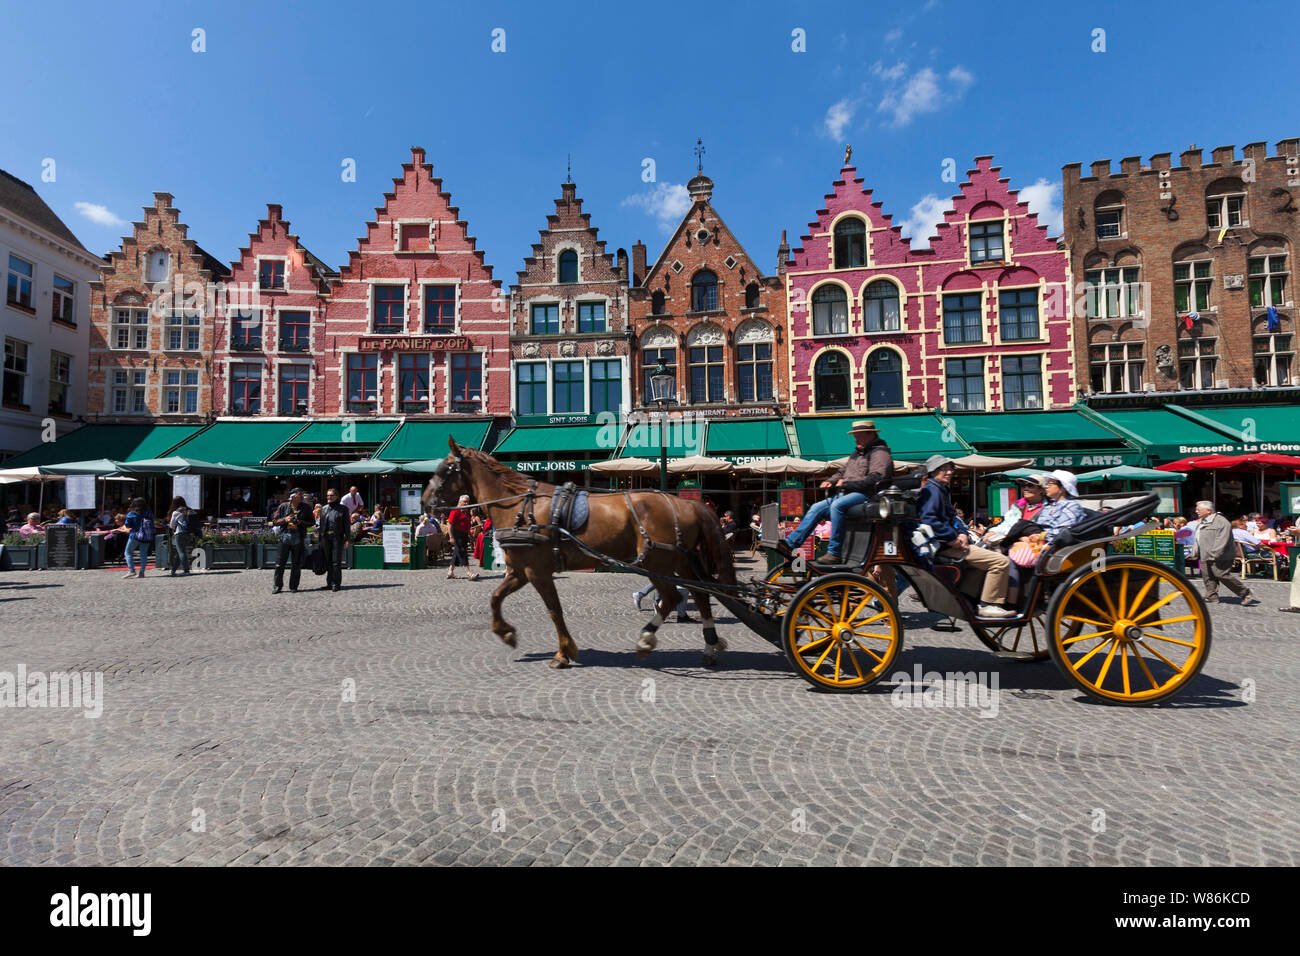 Bruges, Flandre occidentale, Belgique : façade de bâtiments traditionnels flamands dans la place principale Markt (place du marché) des terrasses de café et en calèche. Banque D'Images